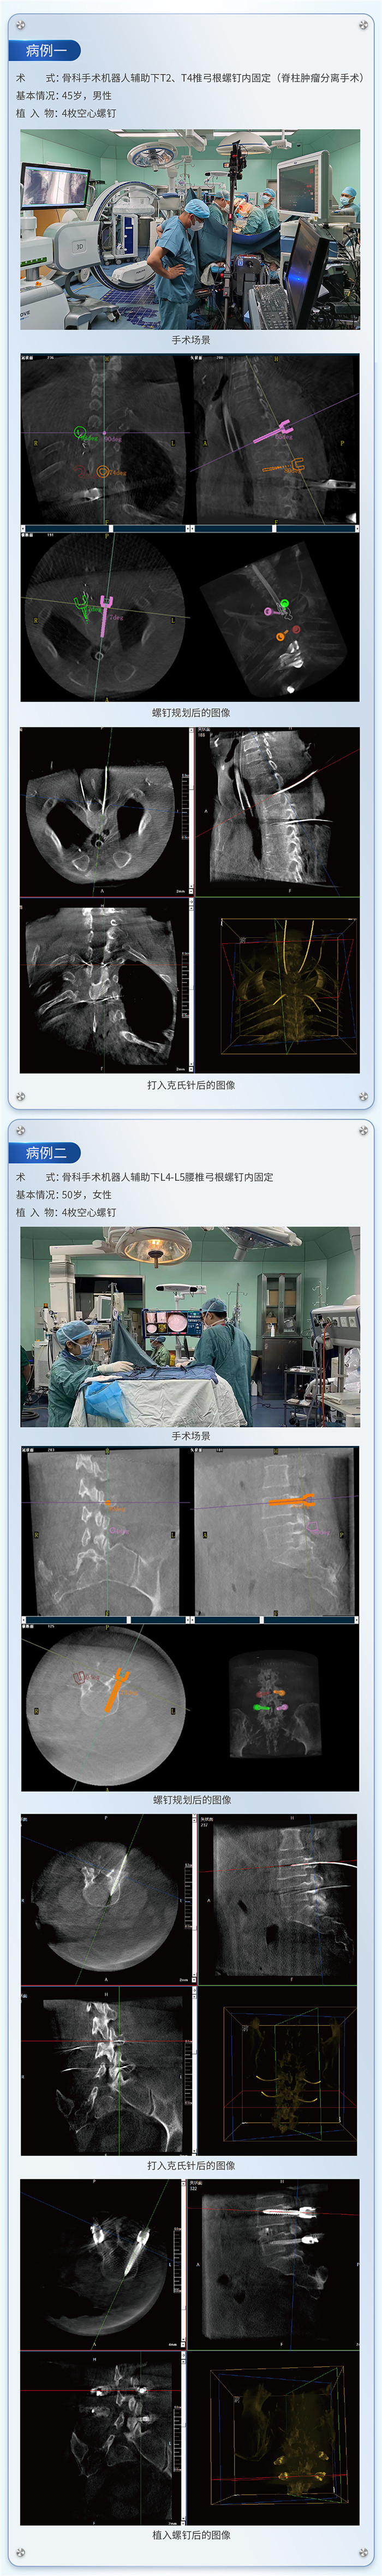 脊柱外科手术导航定位系统应用下的病例分享